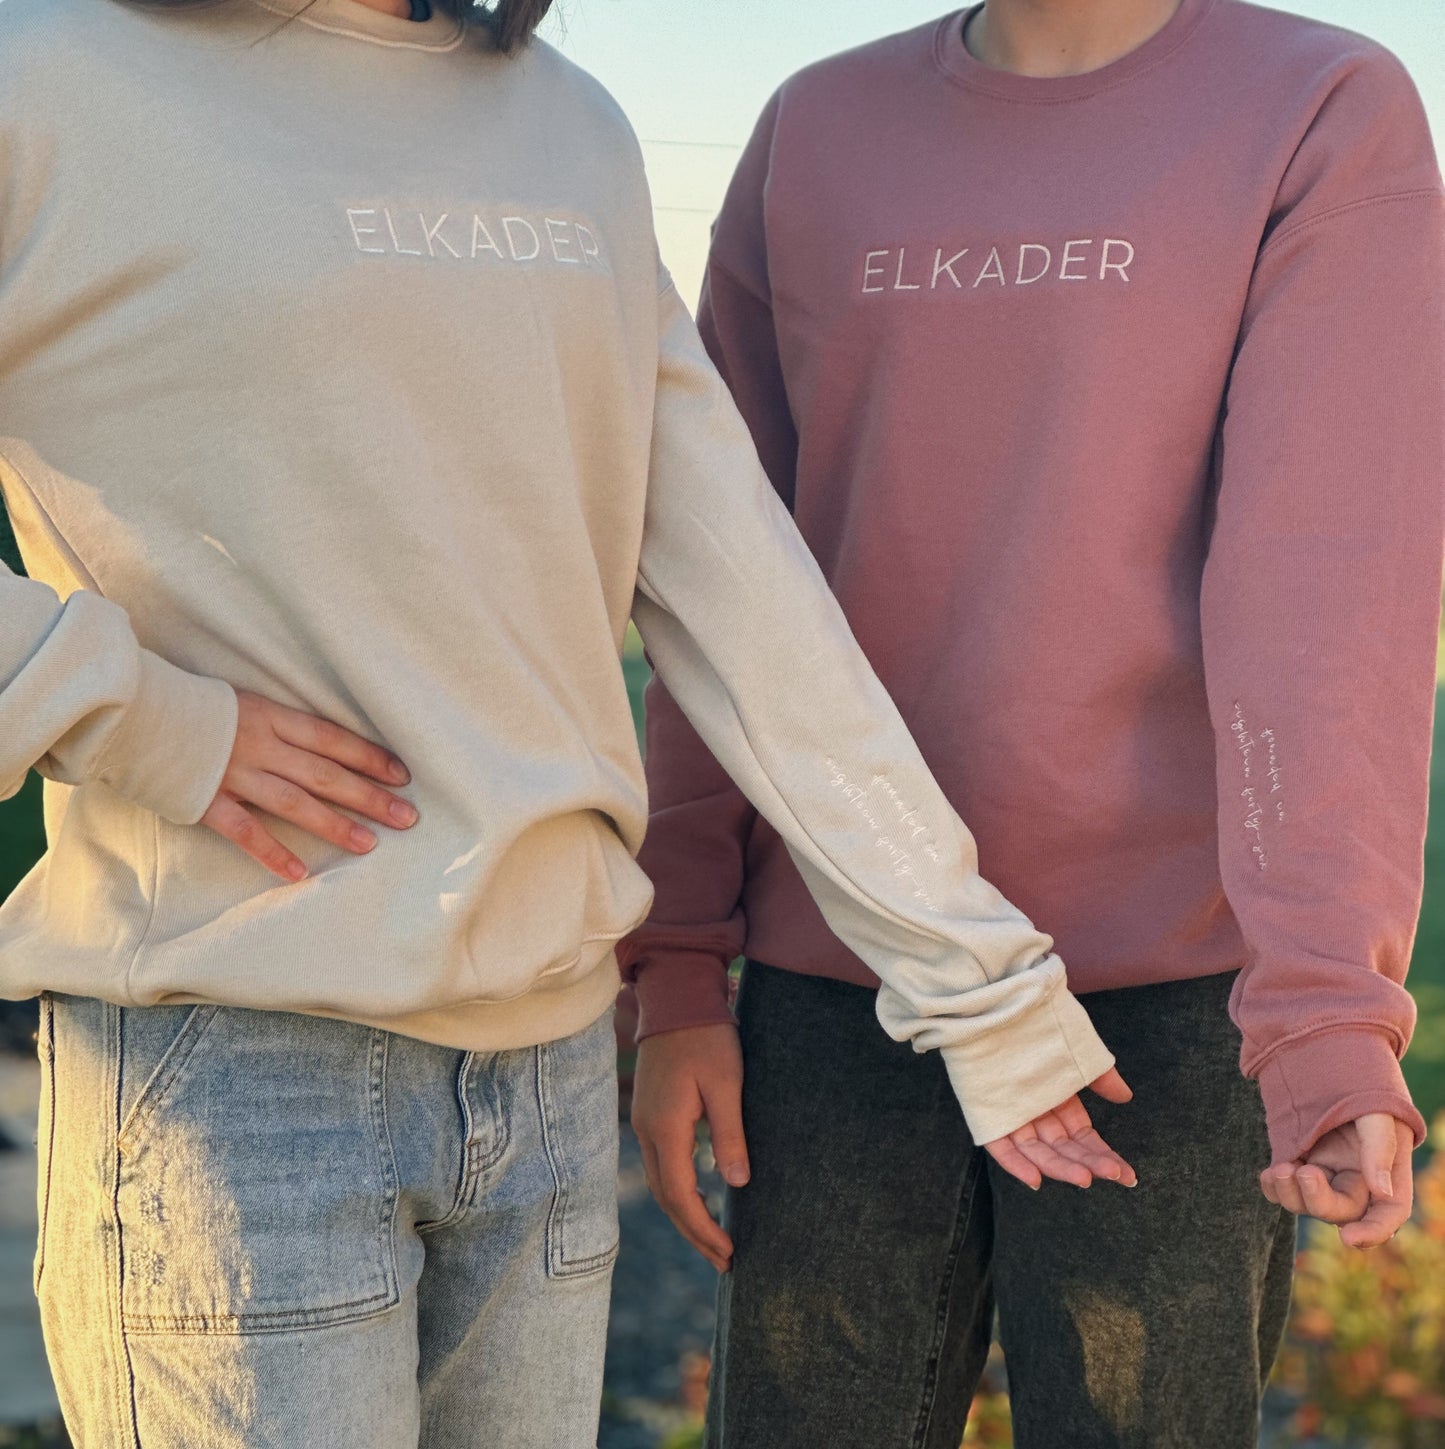 The Elkader Sweatshirt - Unisex